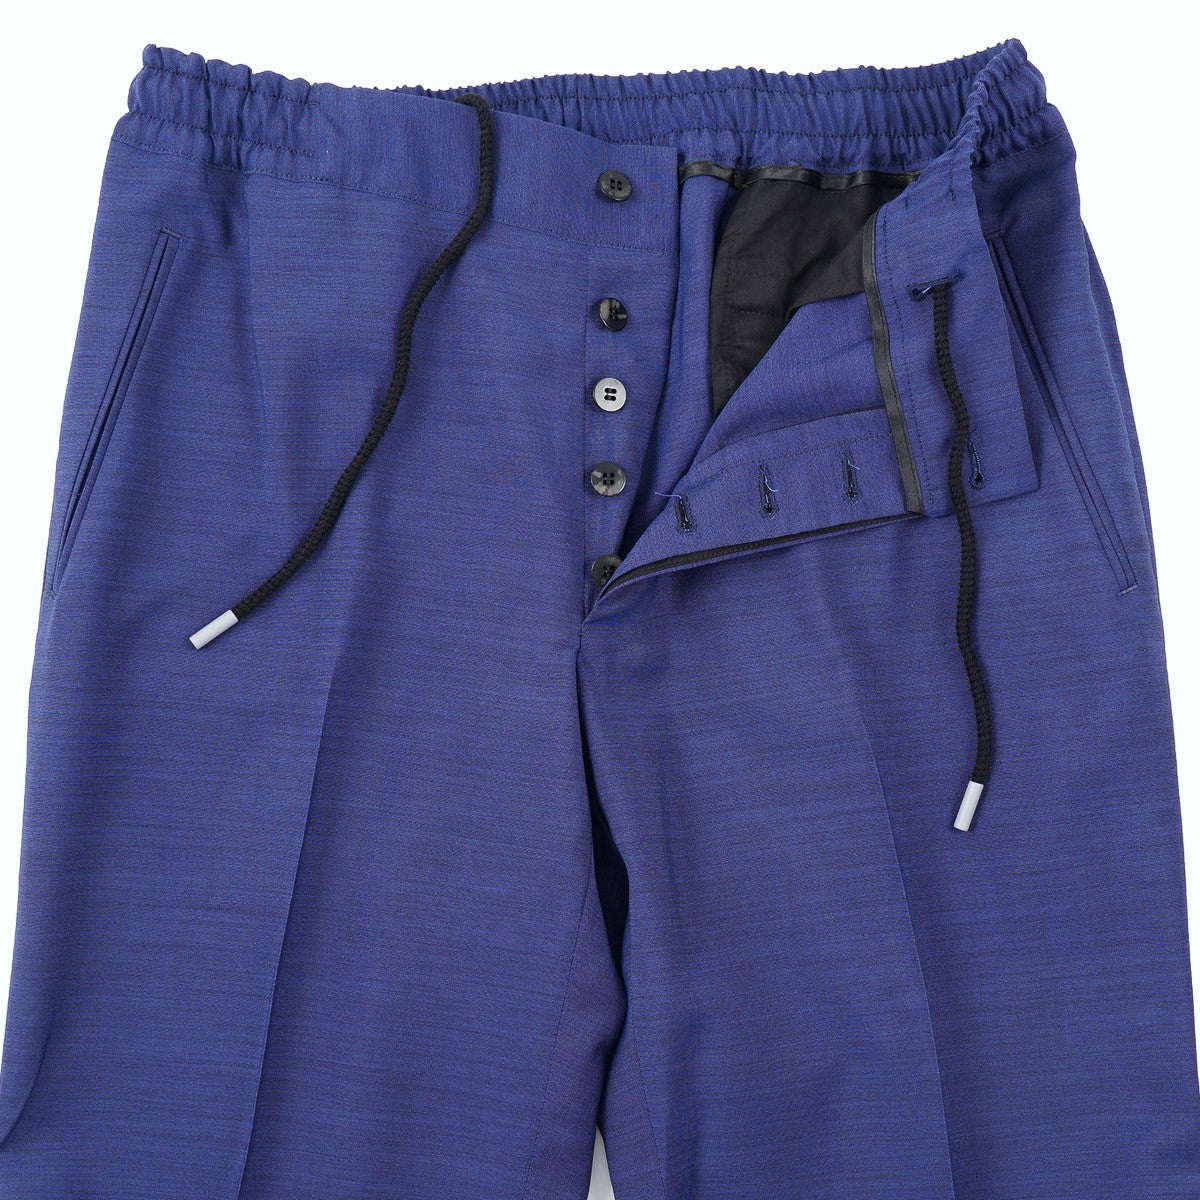 Sartorio Wool Suit with Jogger Pants - Top Shelf Apparel